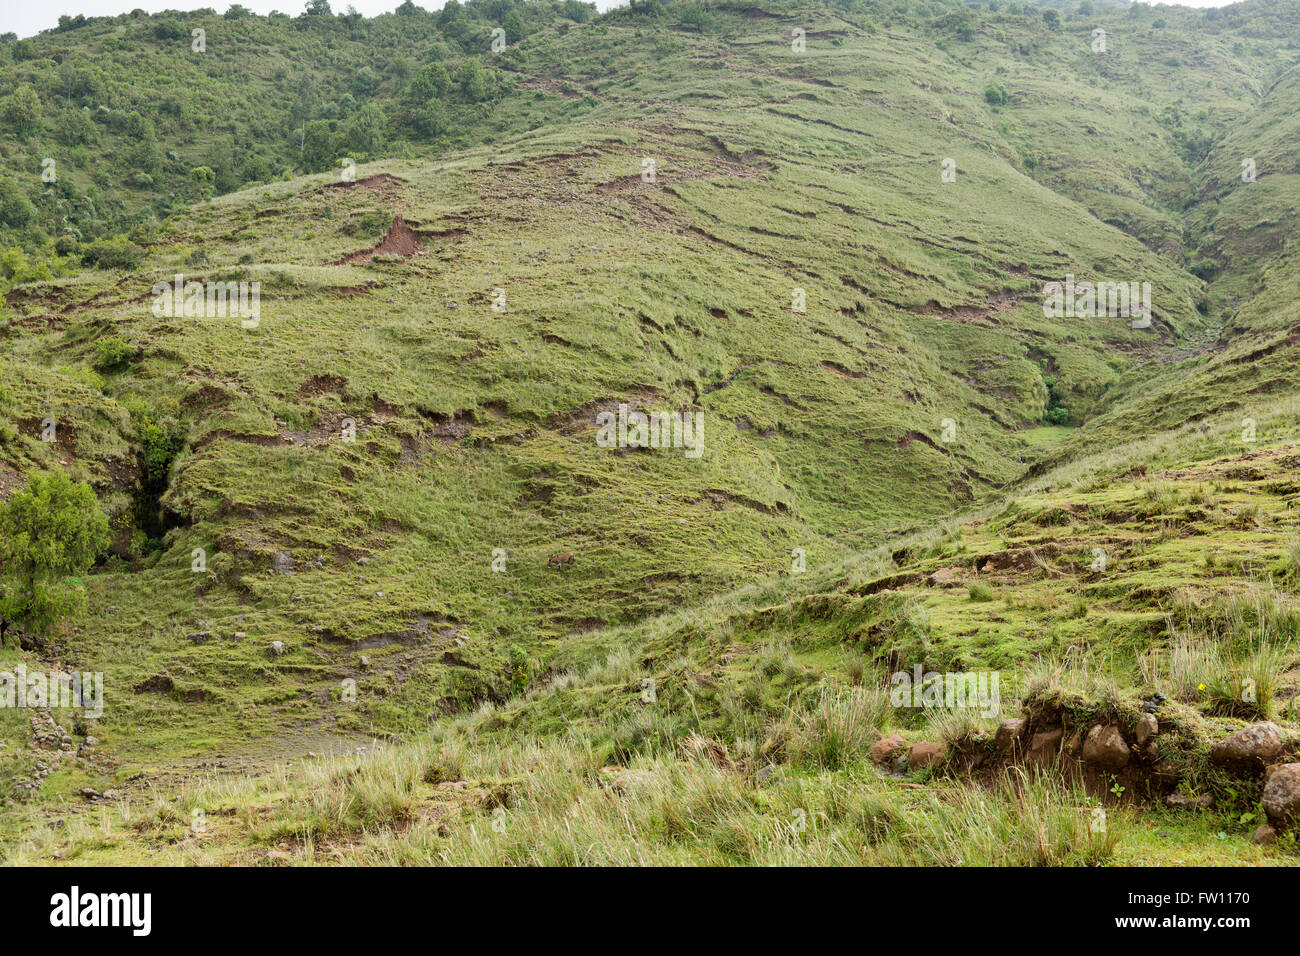 Villaggio Gibi, Gurage, Etiopia, ottobre 2013 questa collina è fortemente eroso a causa della deforestazione e sfruttamento eccessivo dei pascoli. Foto Stock